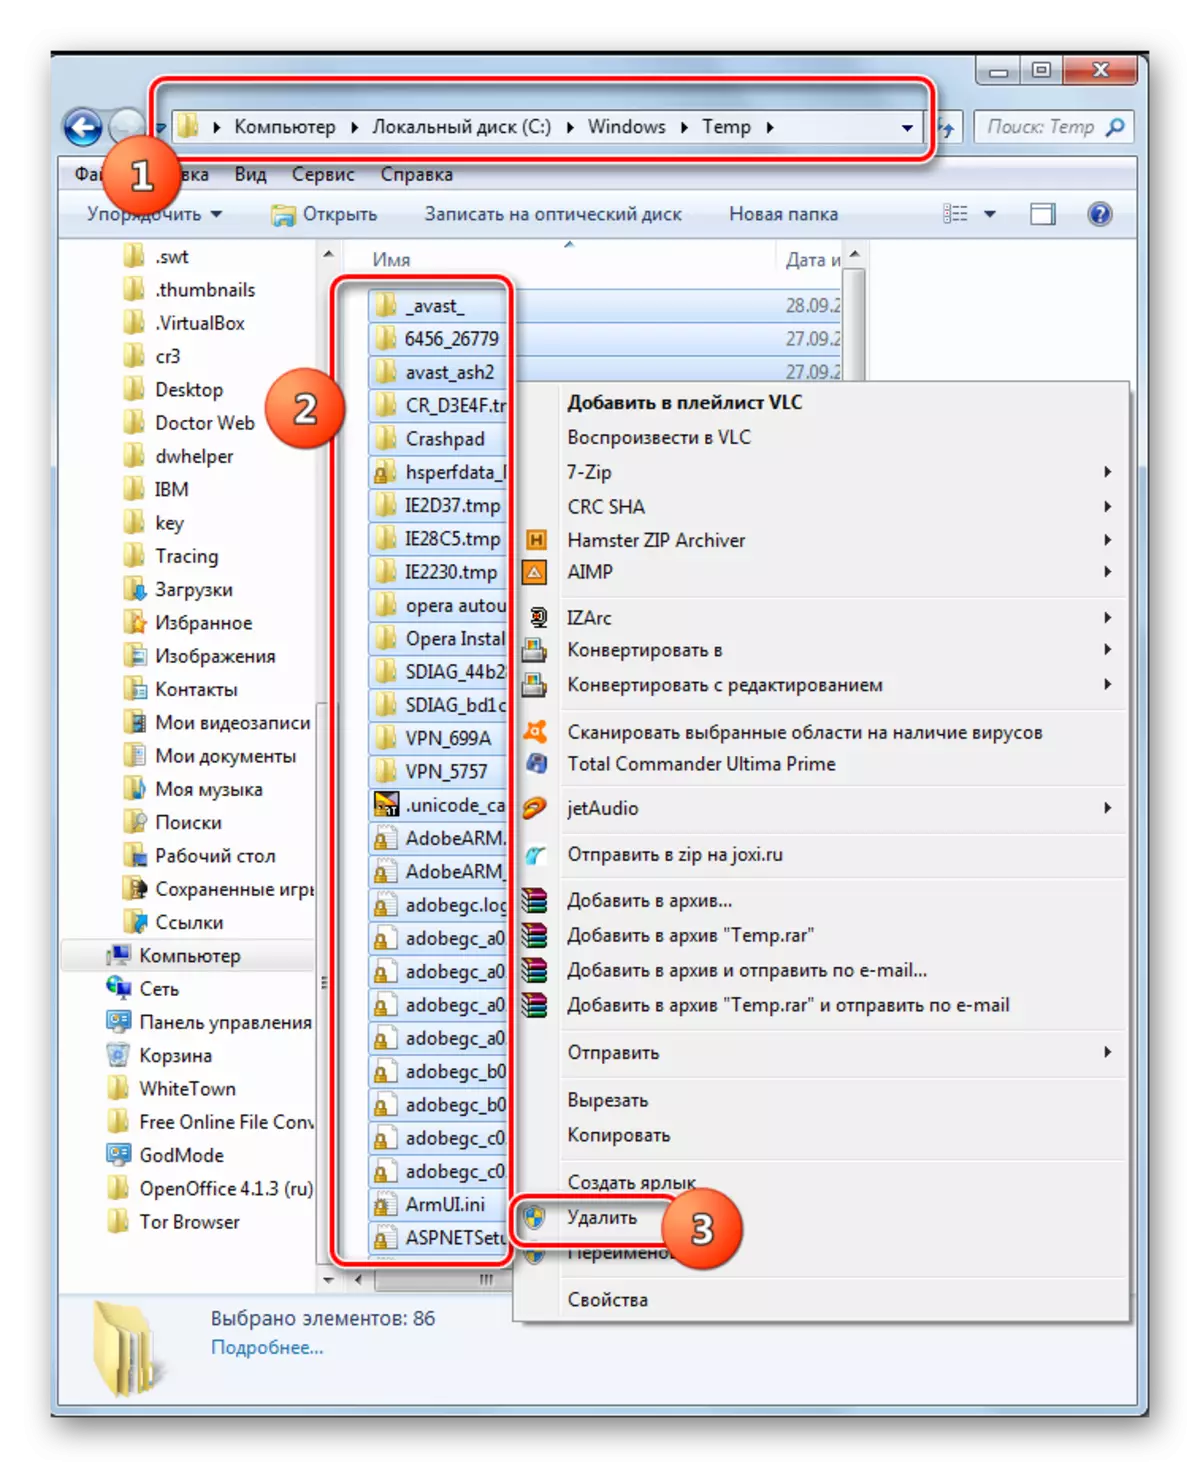 विंडोज 7 मधील संदर्भ मेनूचा वापर करून विंडोज एक्सप्लोररमध्ये सिस्टम डिस्कवर टेम्प फोल्डर साफ करणे